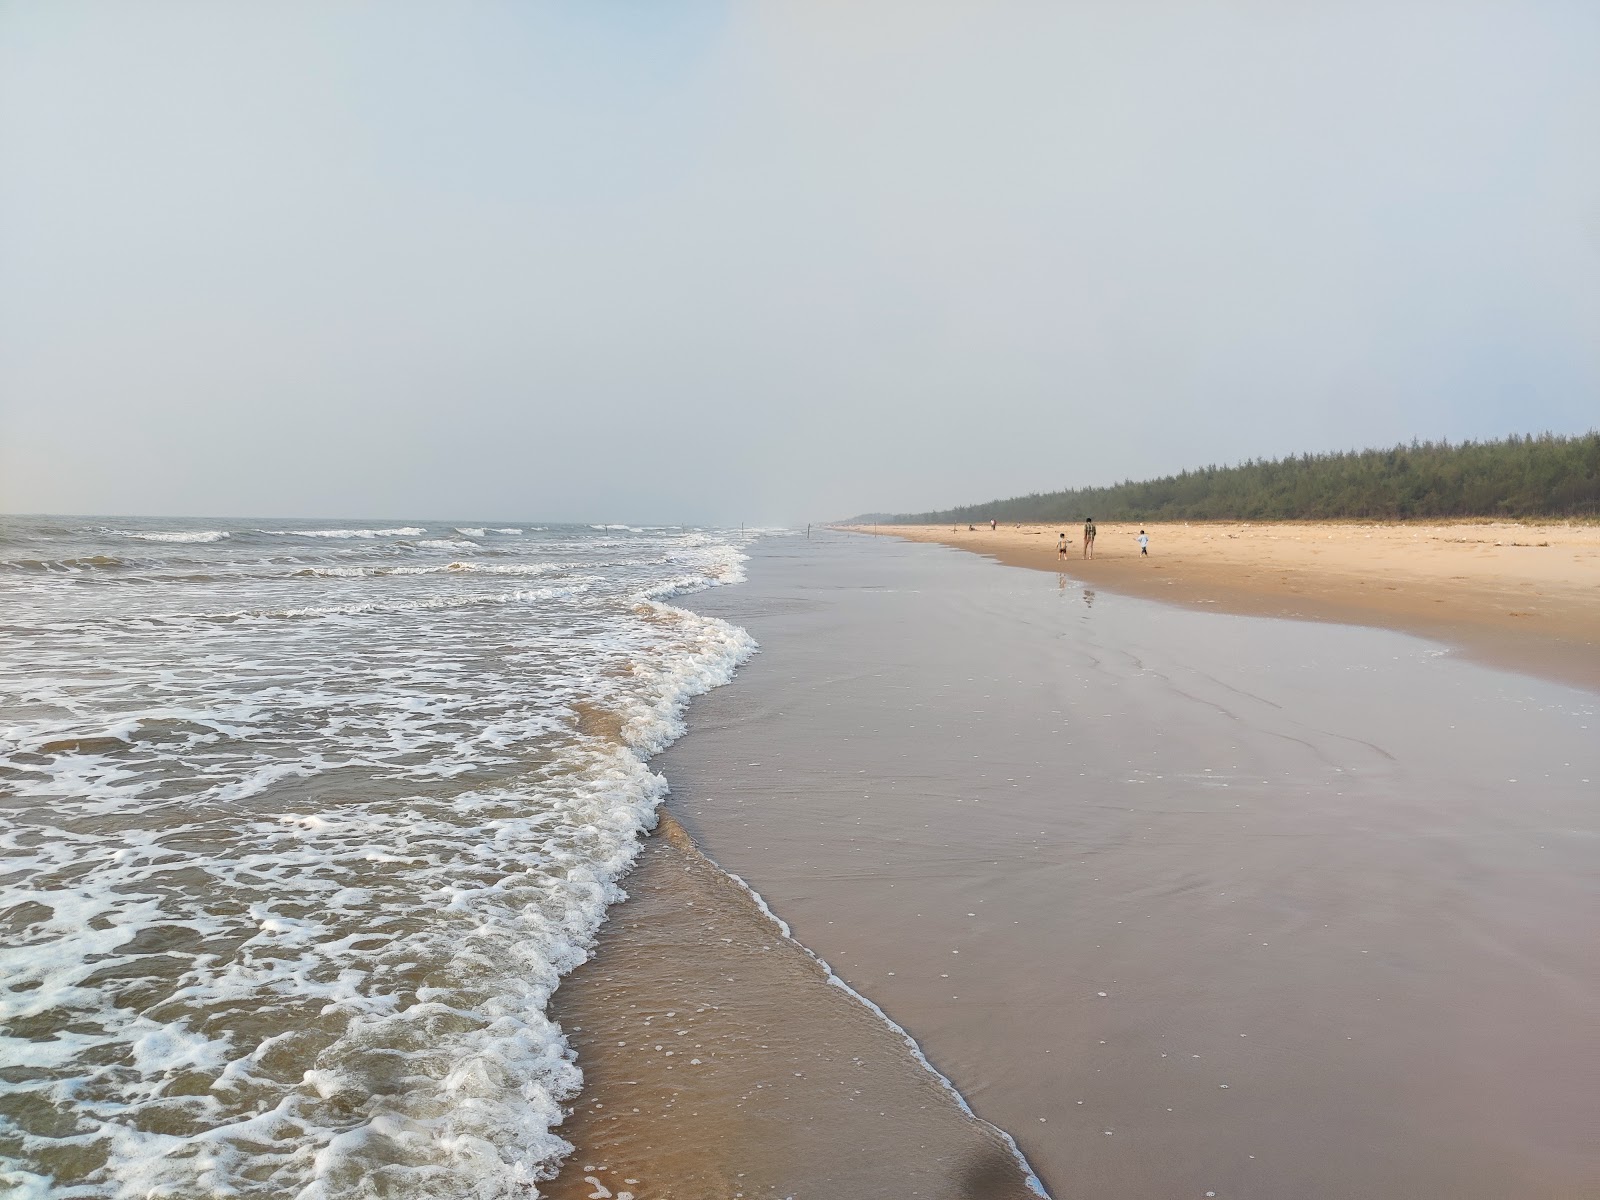 Ramapuram Shootout Beach'in fotoğrafı parlak kum yüzey ile